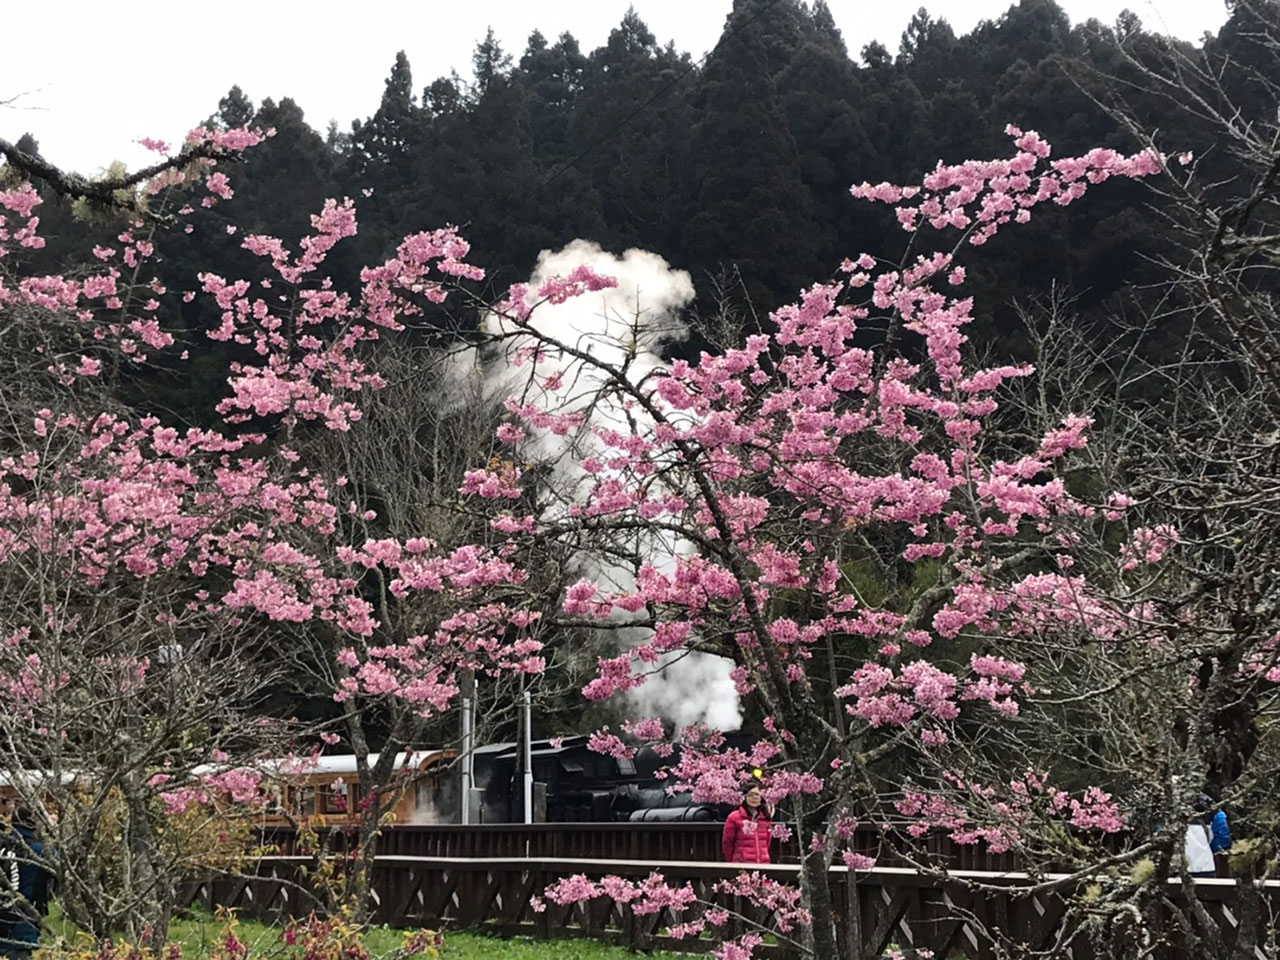  蒸氣火車與櫻花